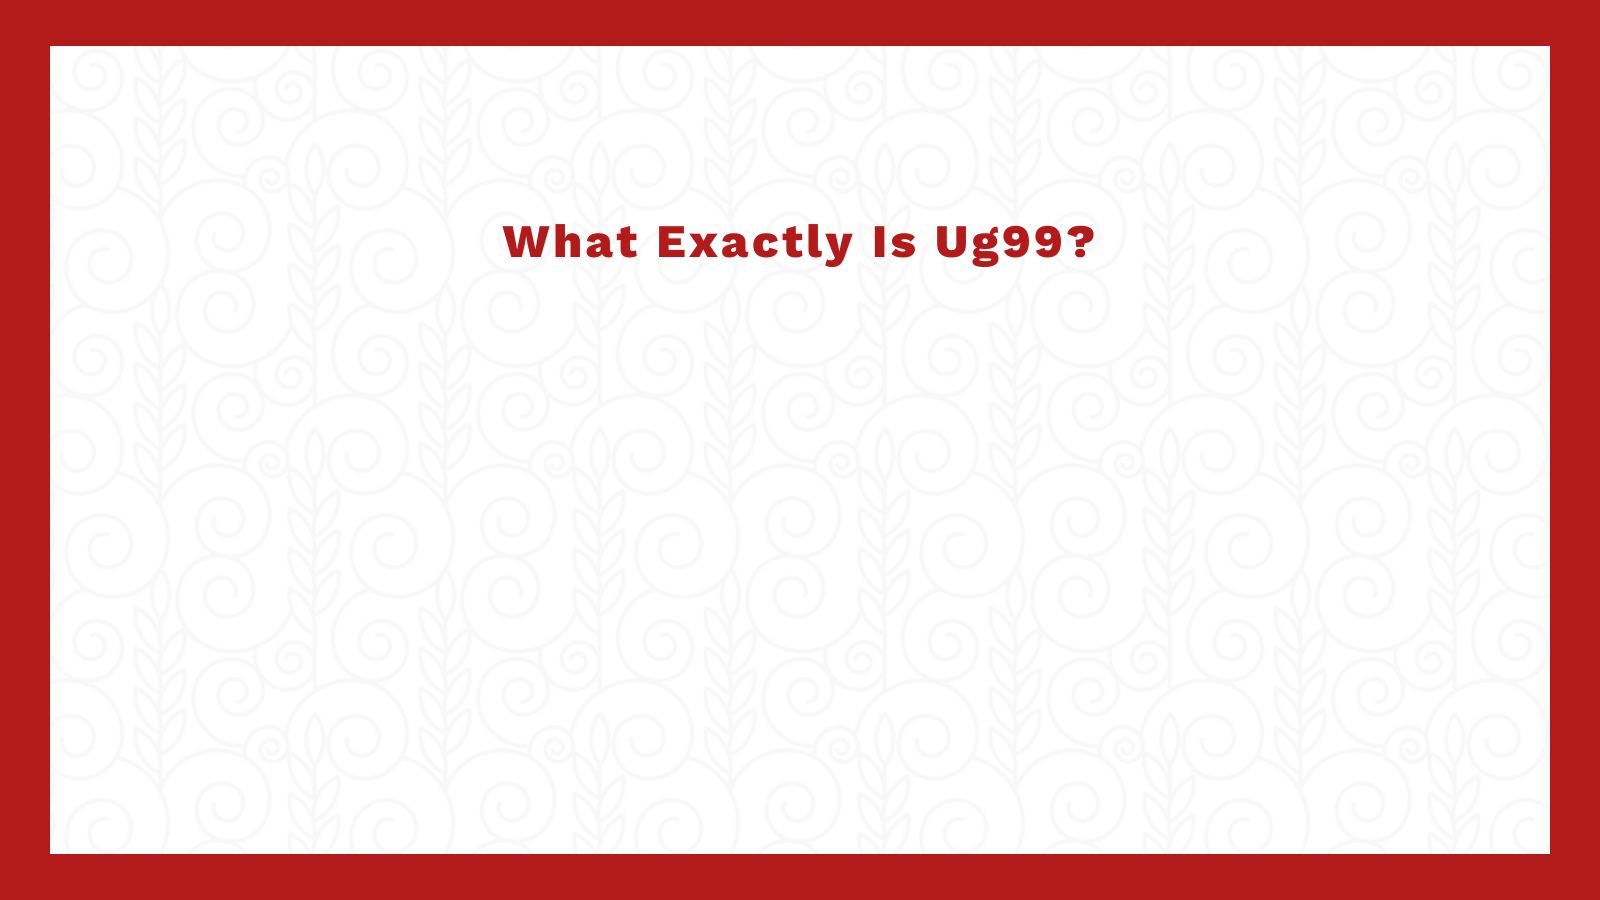 What Exactly is Ug99